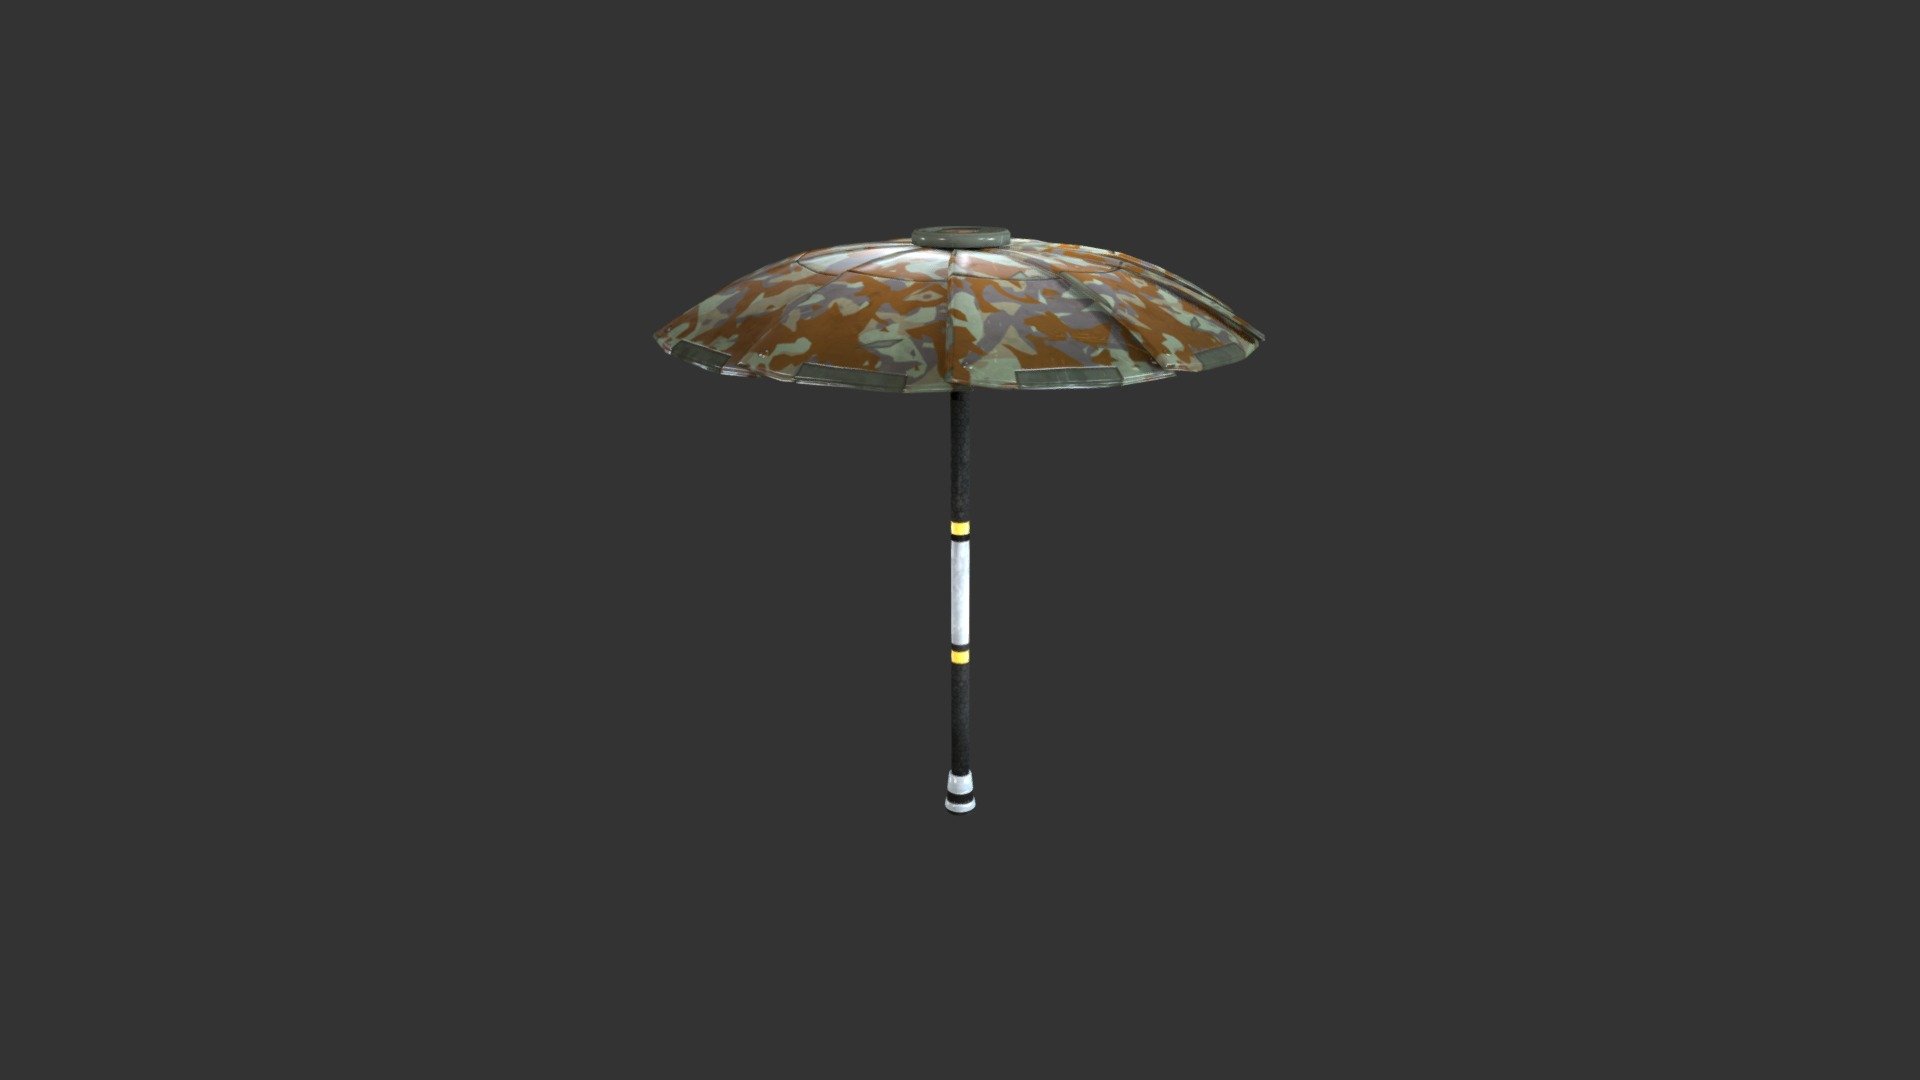 Founder’s Umbrella